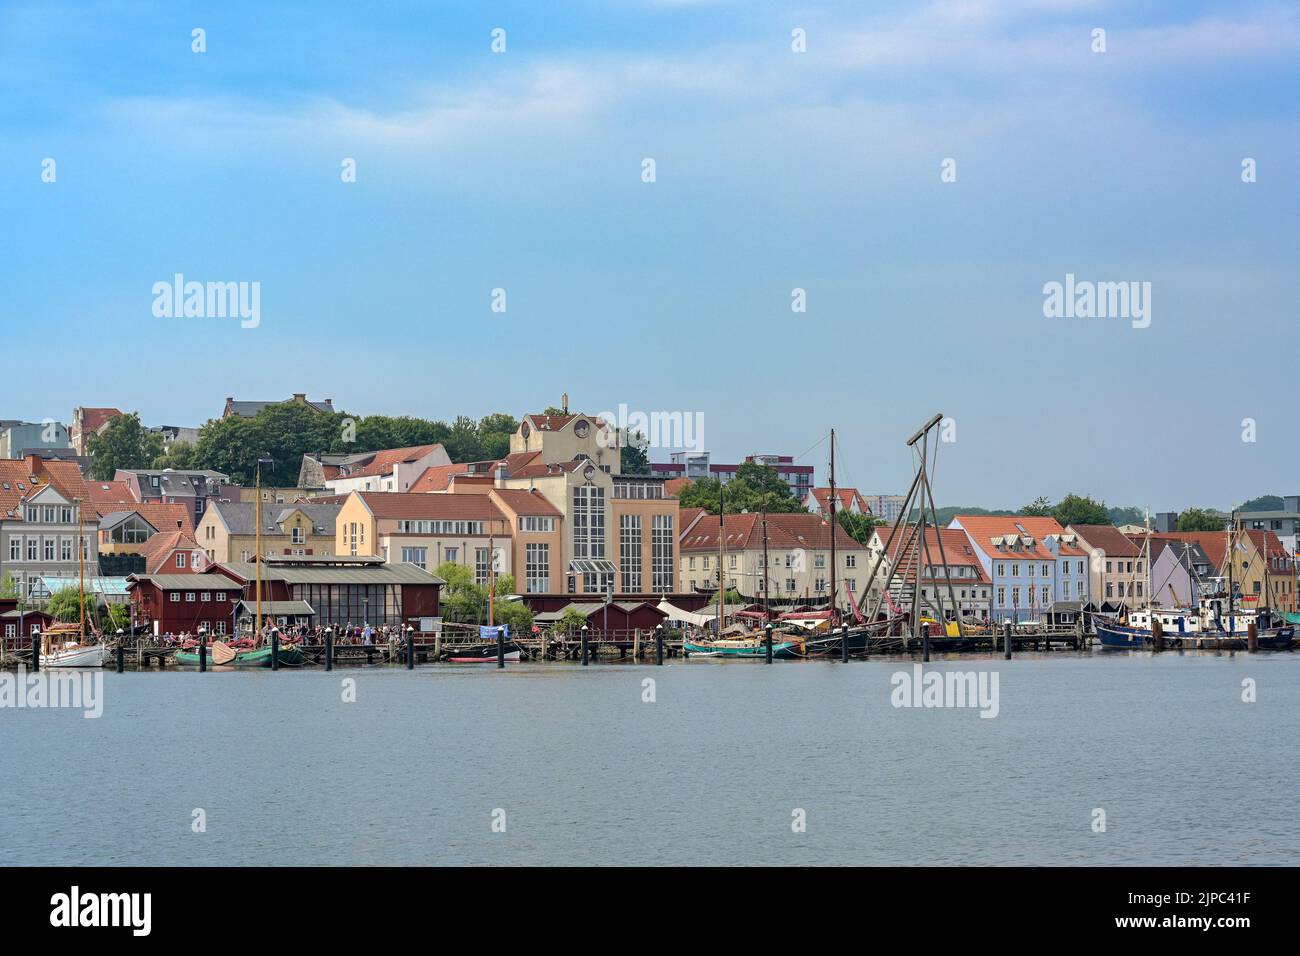 Flensburg, Germania, 25 luglio 2022: Porto dei musei e vecchio cantiere navale al fiordo, paesaggio urbano con case cittadine sotto un cielo blu, copia spazio, se Foto Stock